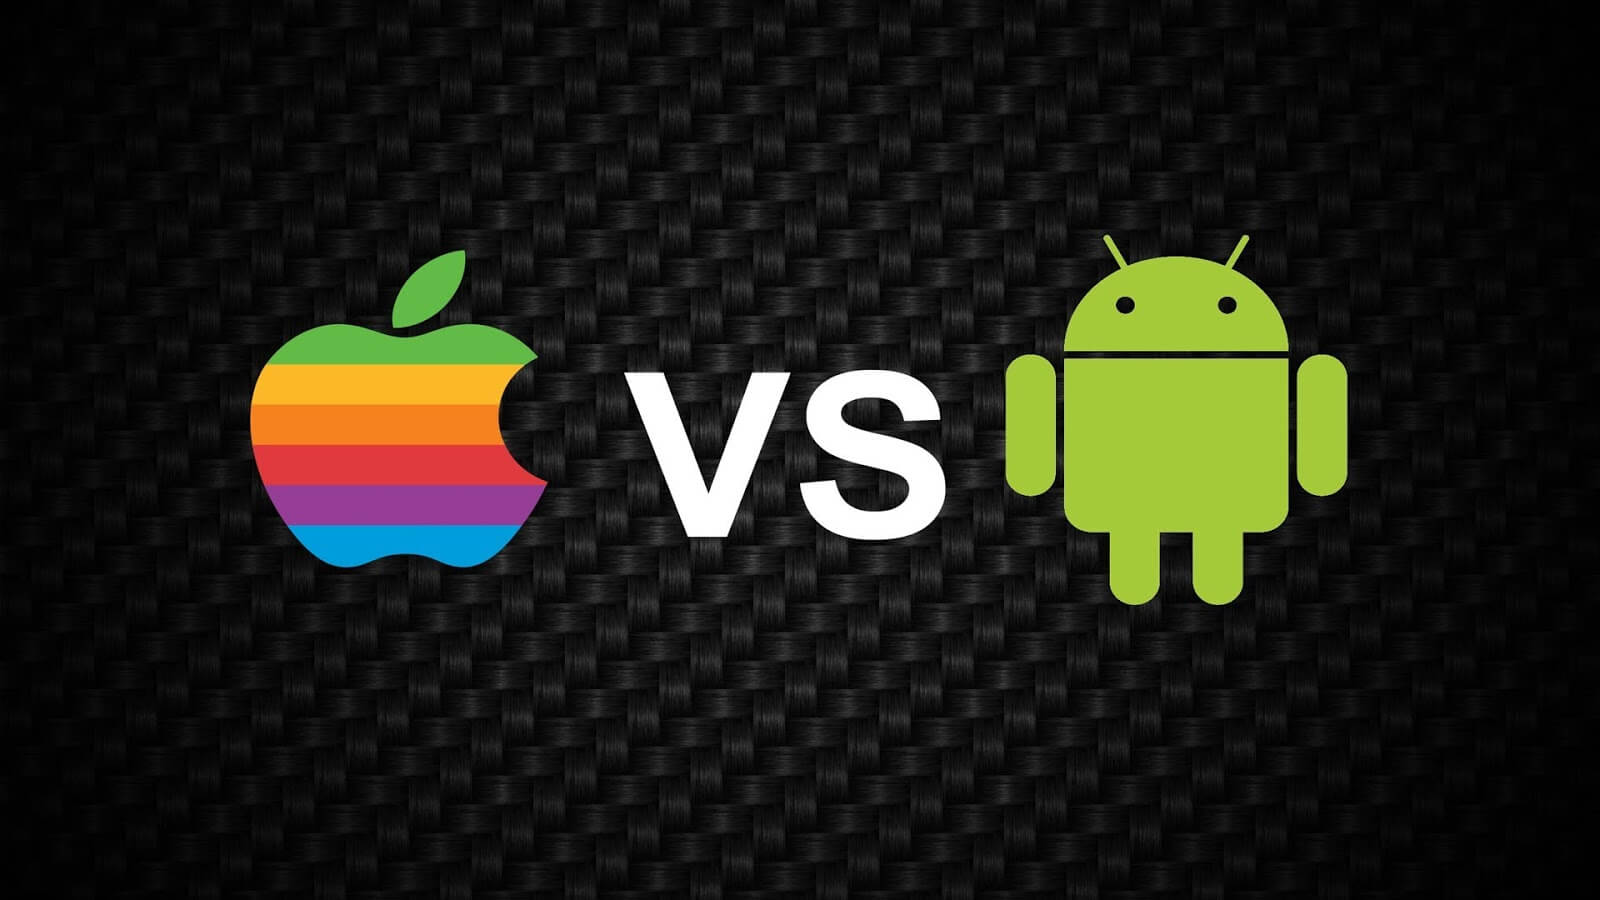 Почему iPhone перепродать проще, чем Android